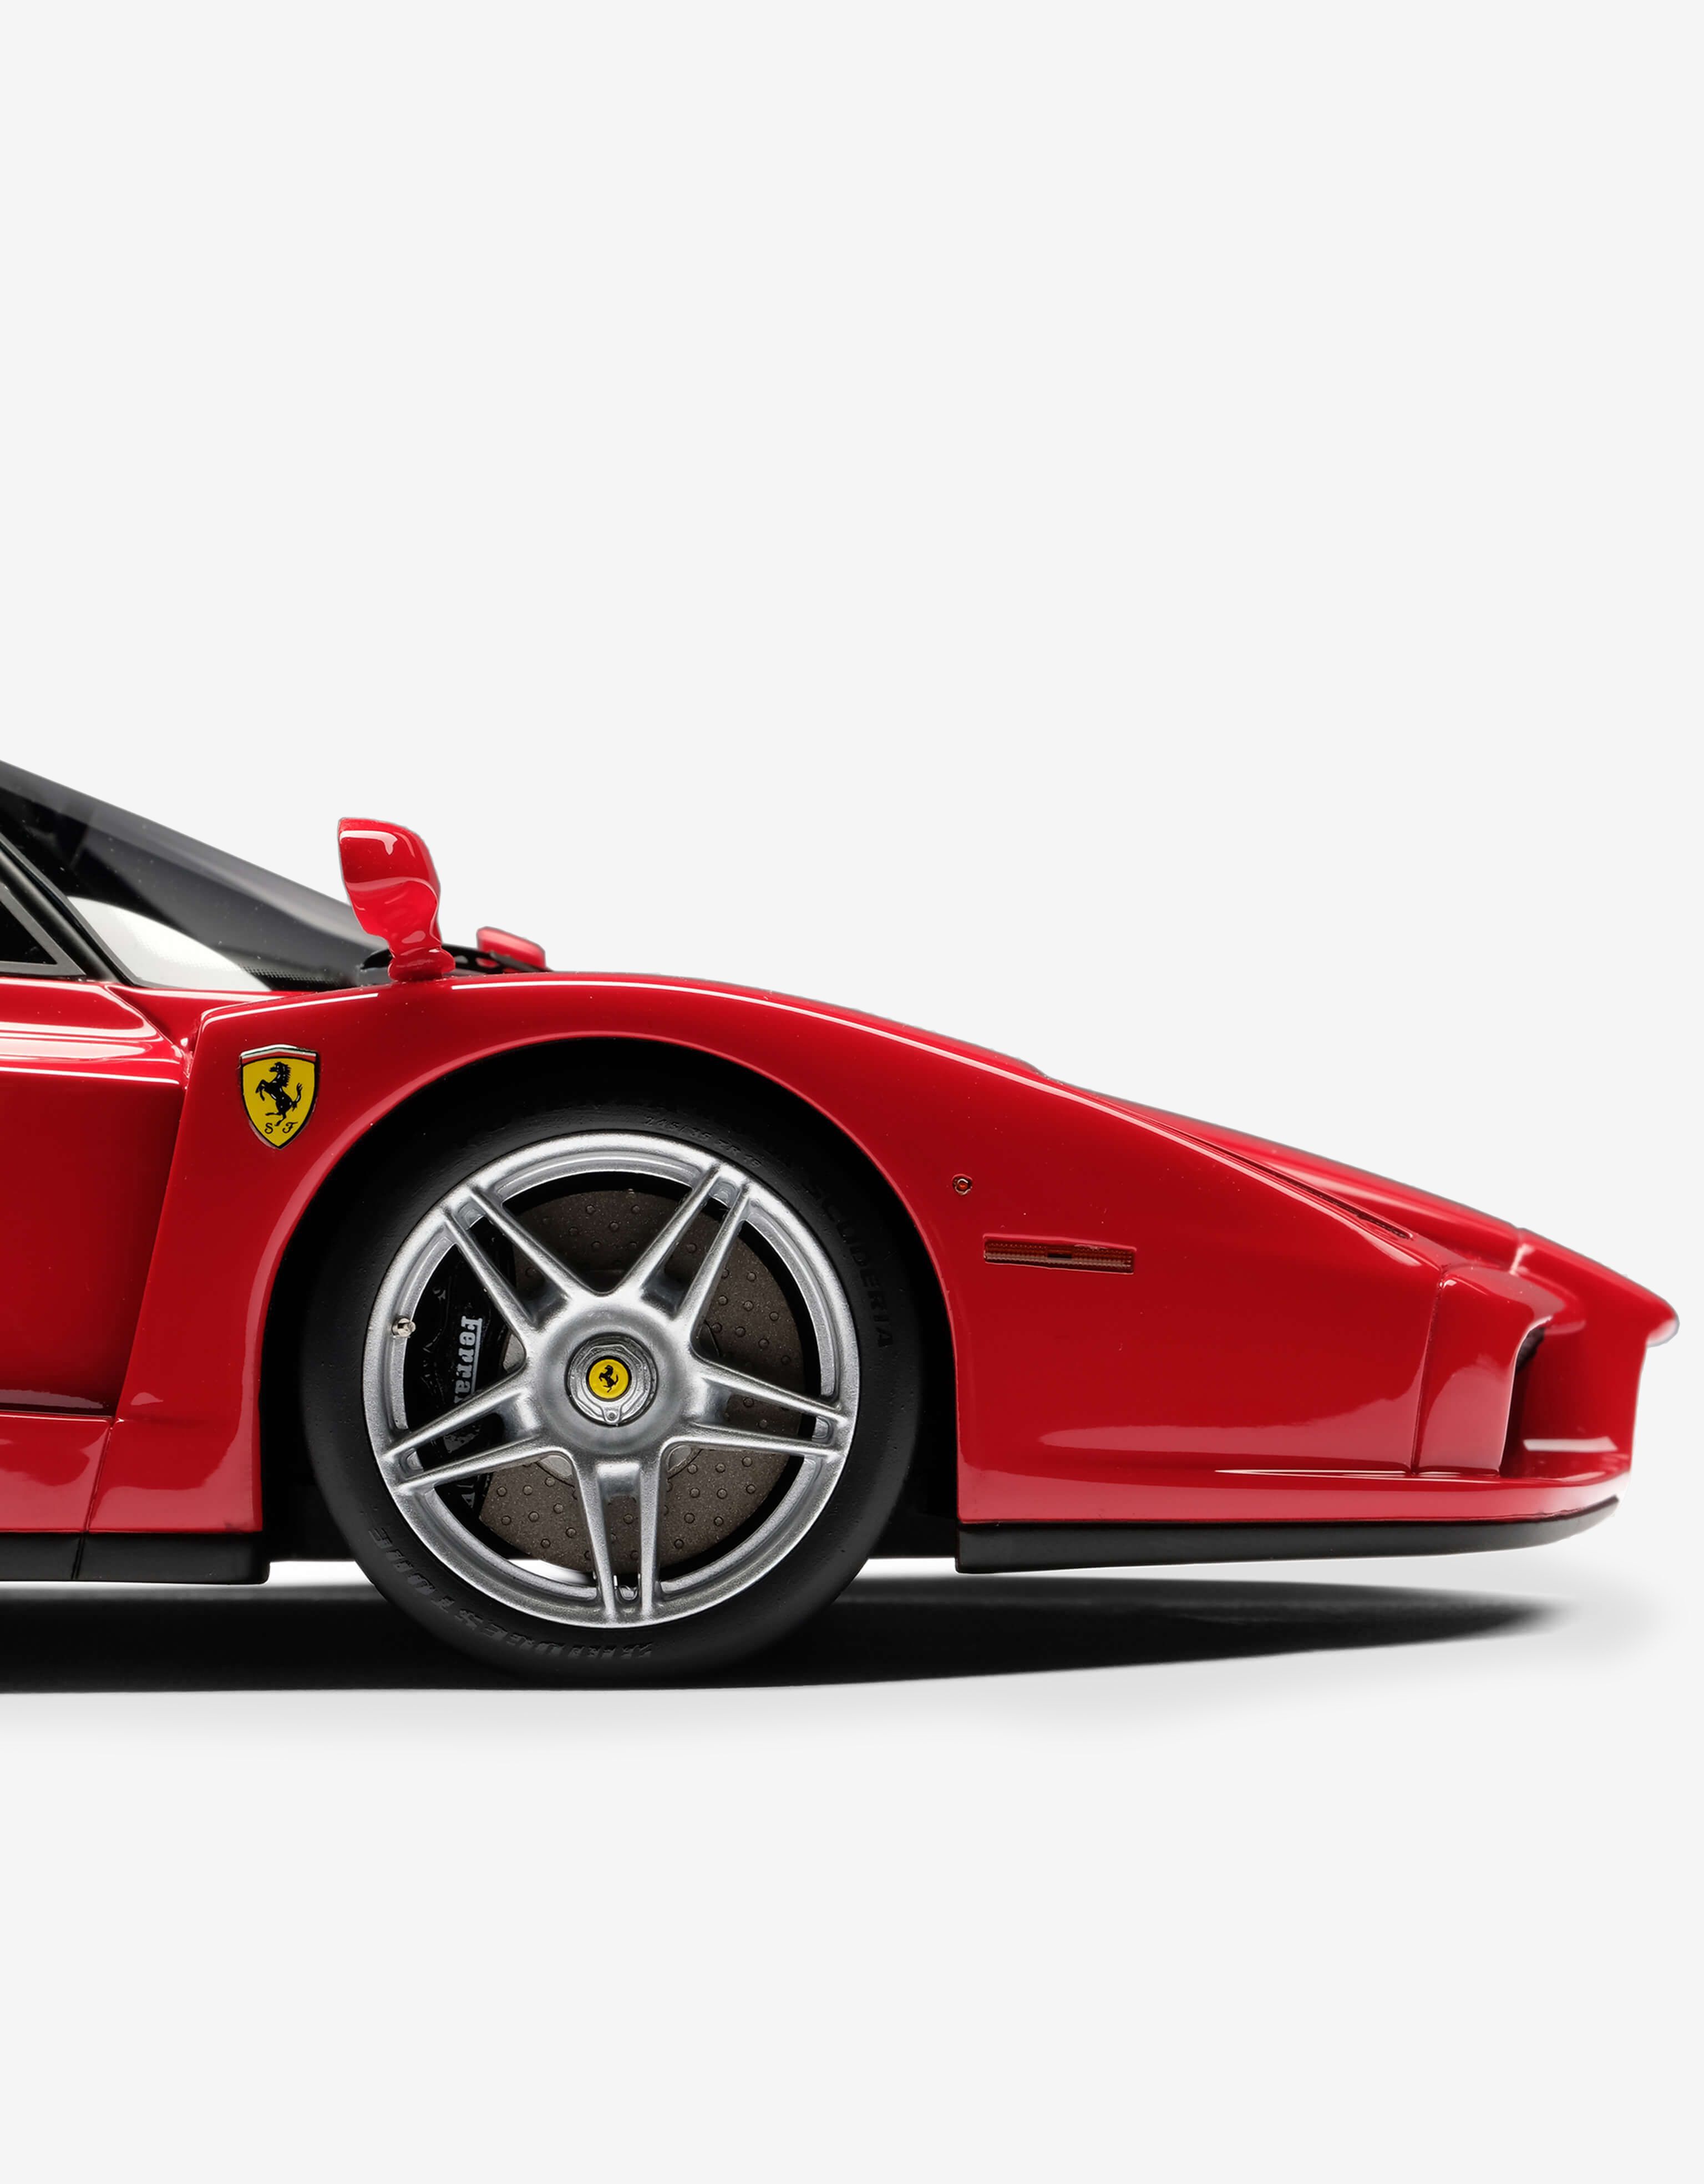 Ferrari Enzo model in 1:18 scale